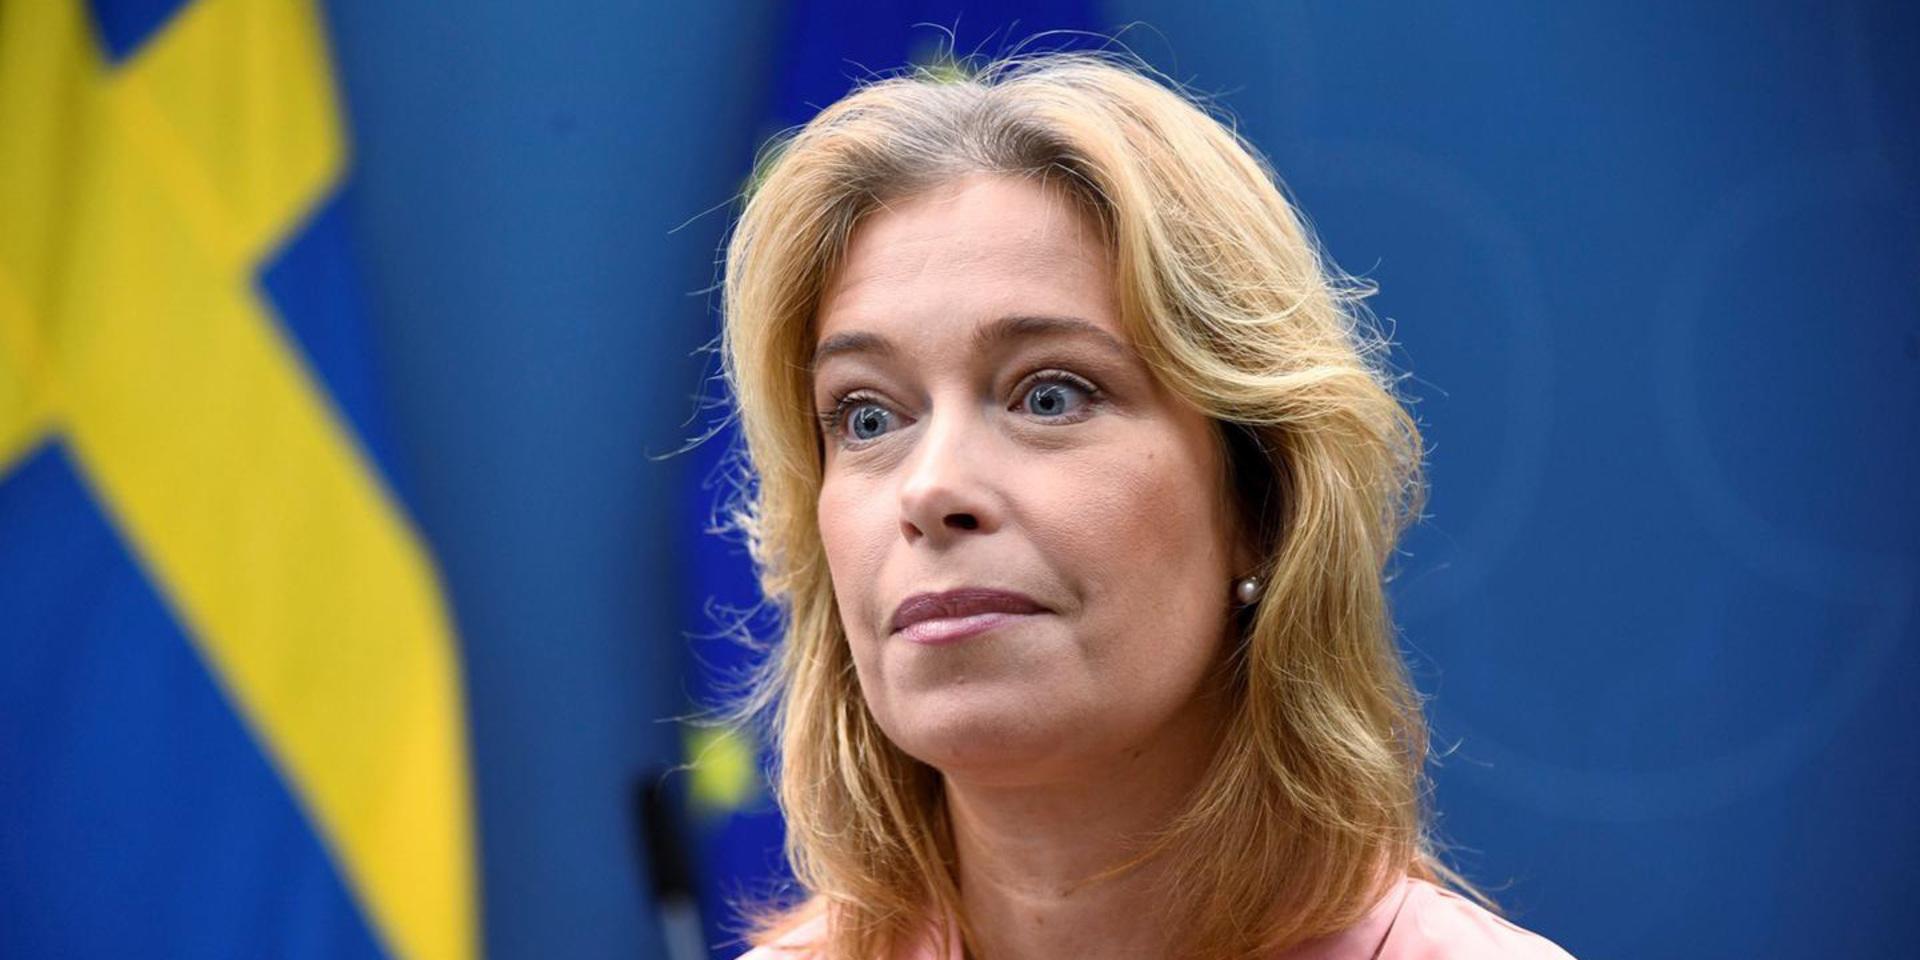 Klimat- och miljöministern Annika Strandhäll (S) höll pressträff om havsbaserad vindkraft. 